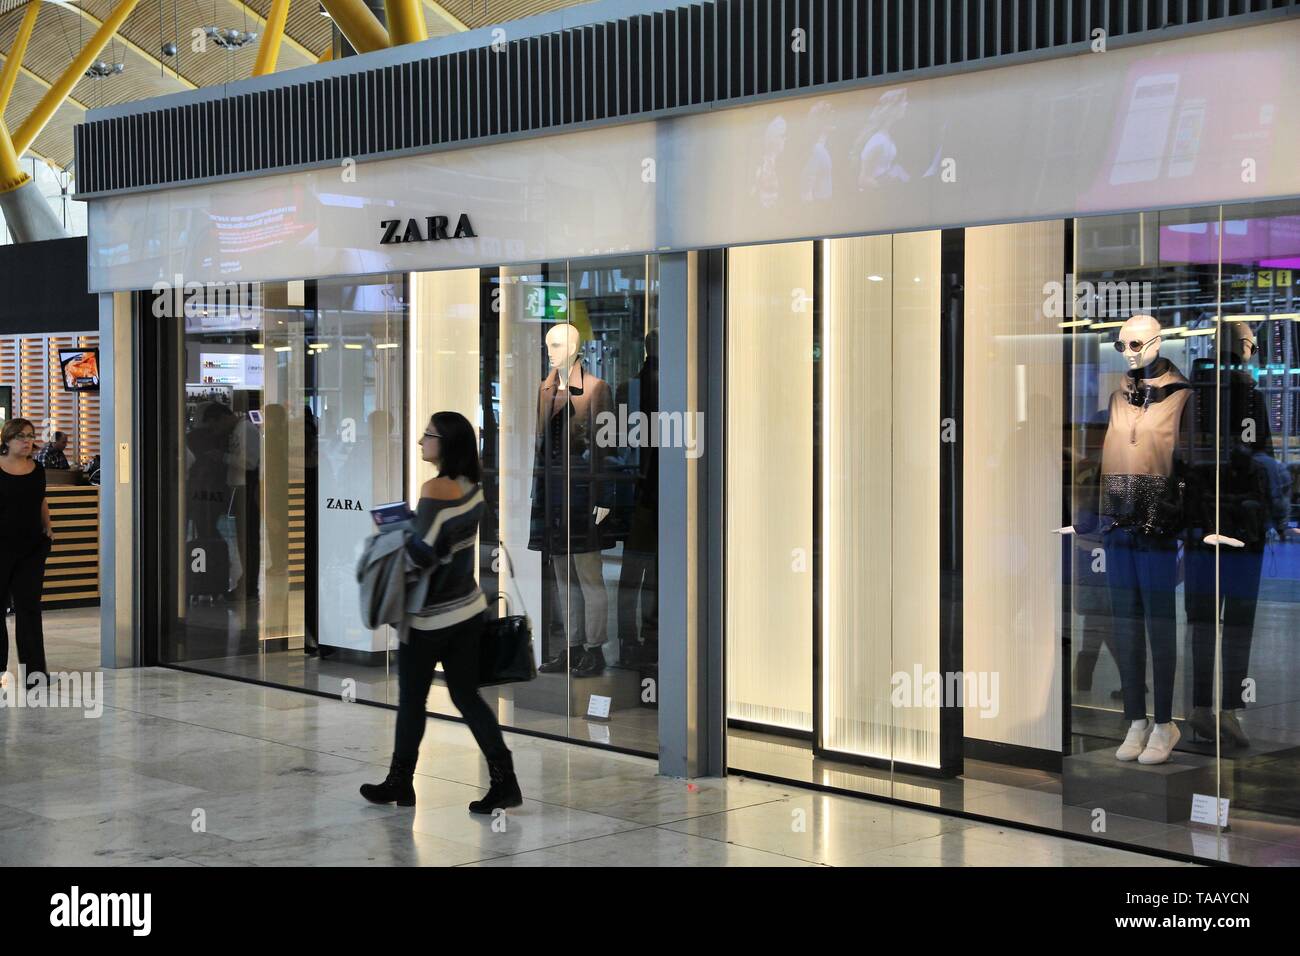 MADRID, Spanien - Oktober 20, 2014: die Menschen besuchen Zara Fashion Store am Flughafen Madrid Barajas T4. Es gibt 63 Shops im Flughafen Terminal 4. Stockfoto